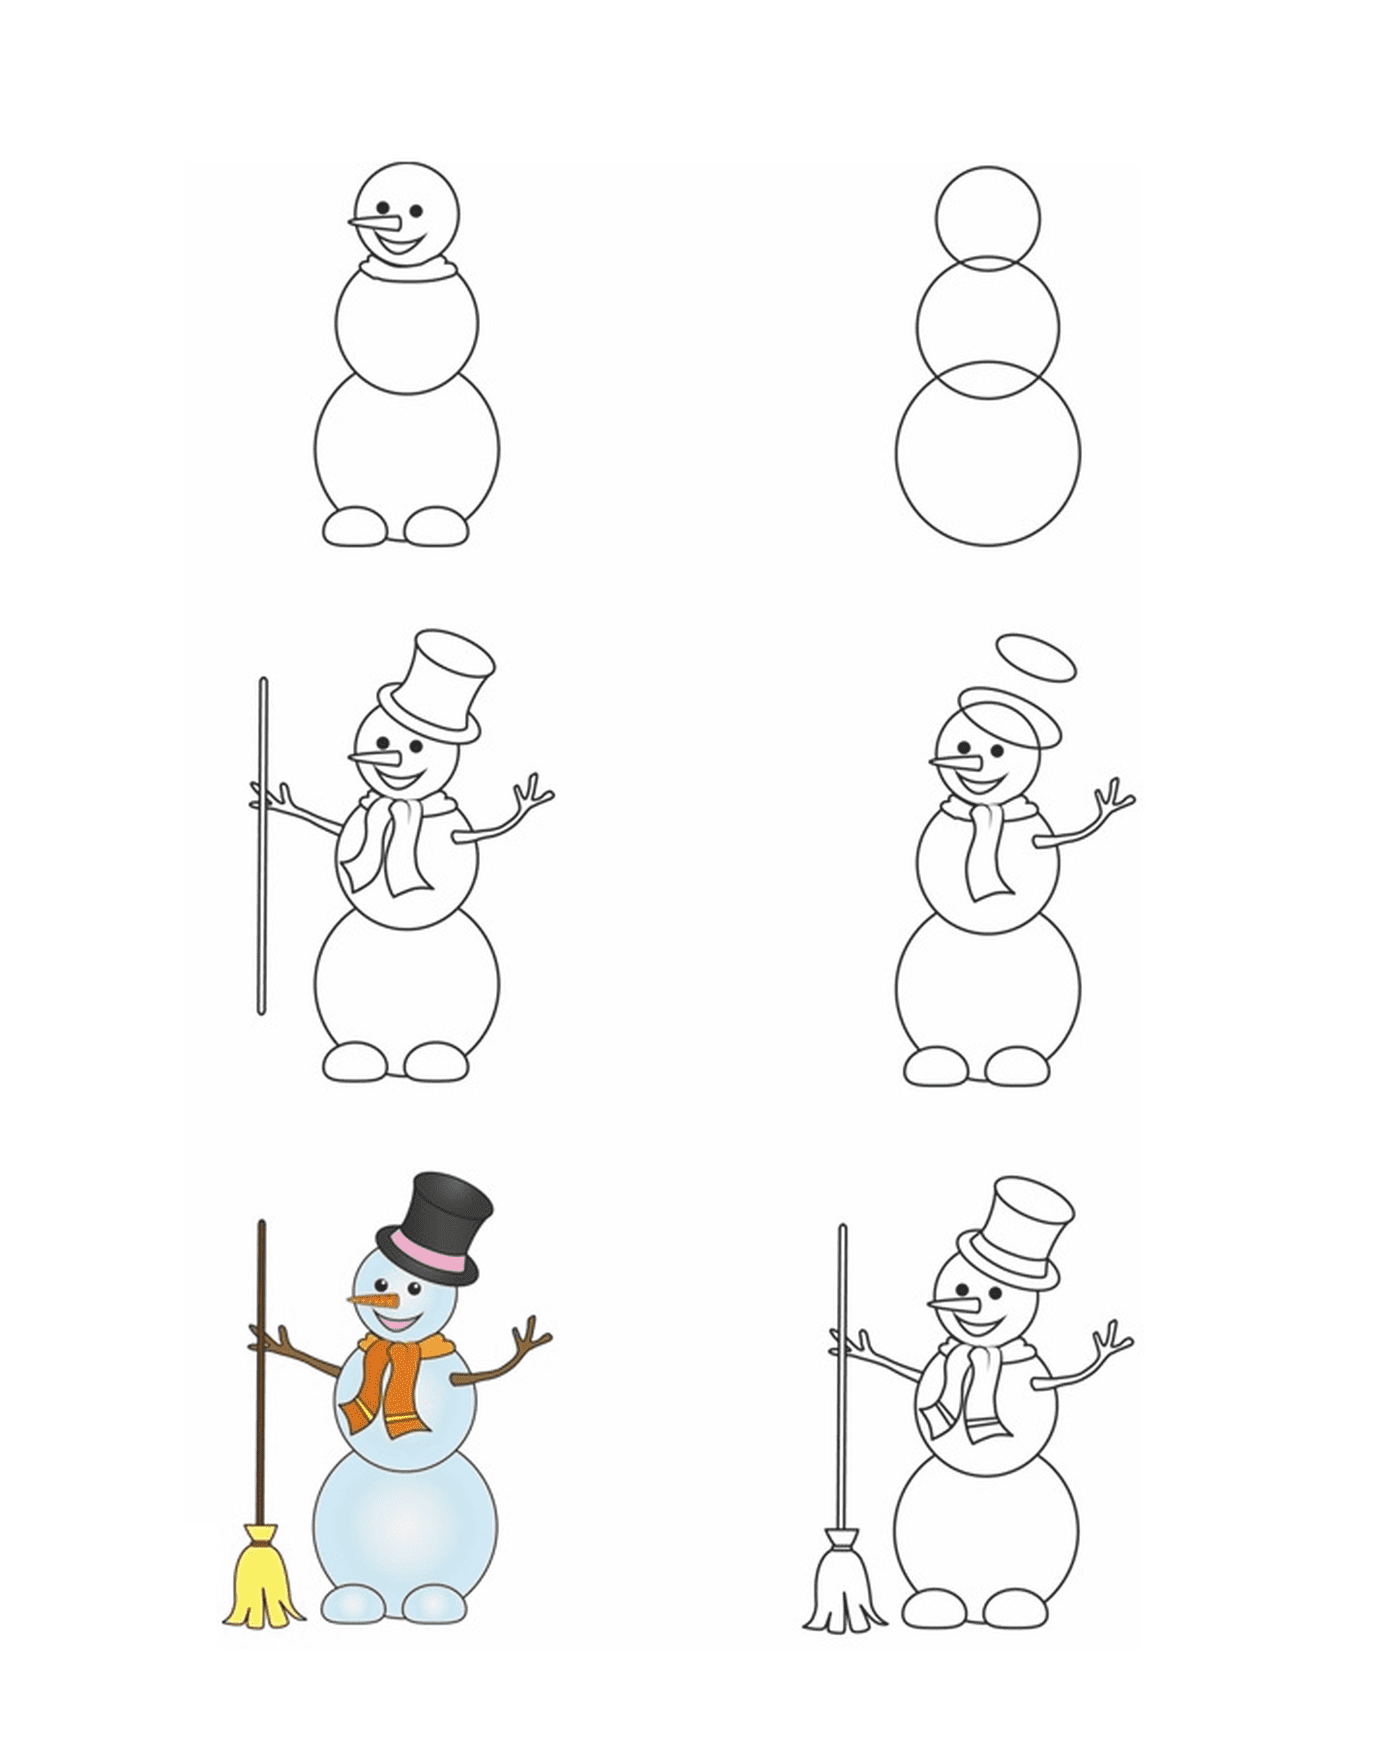  Cómo dibujar un muñeco de nieve paso a paso 